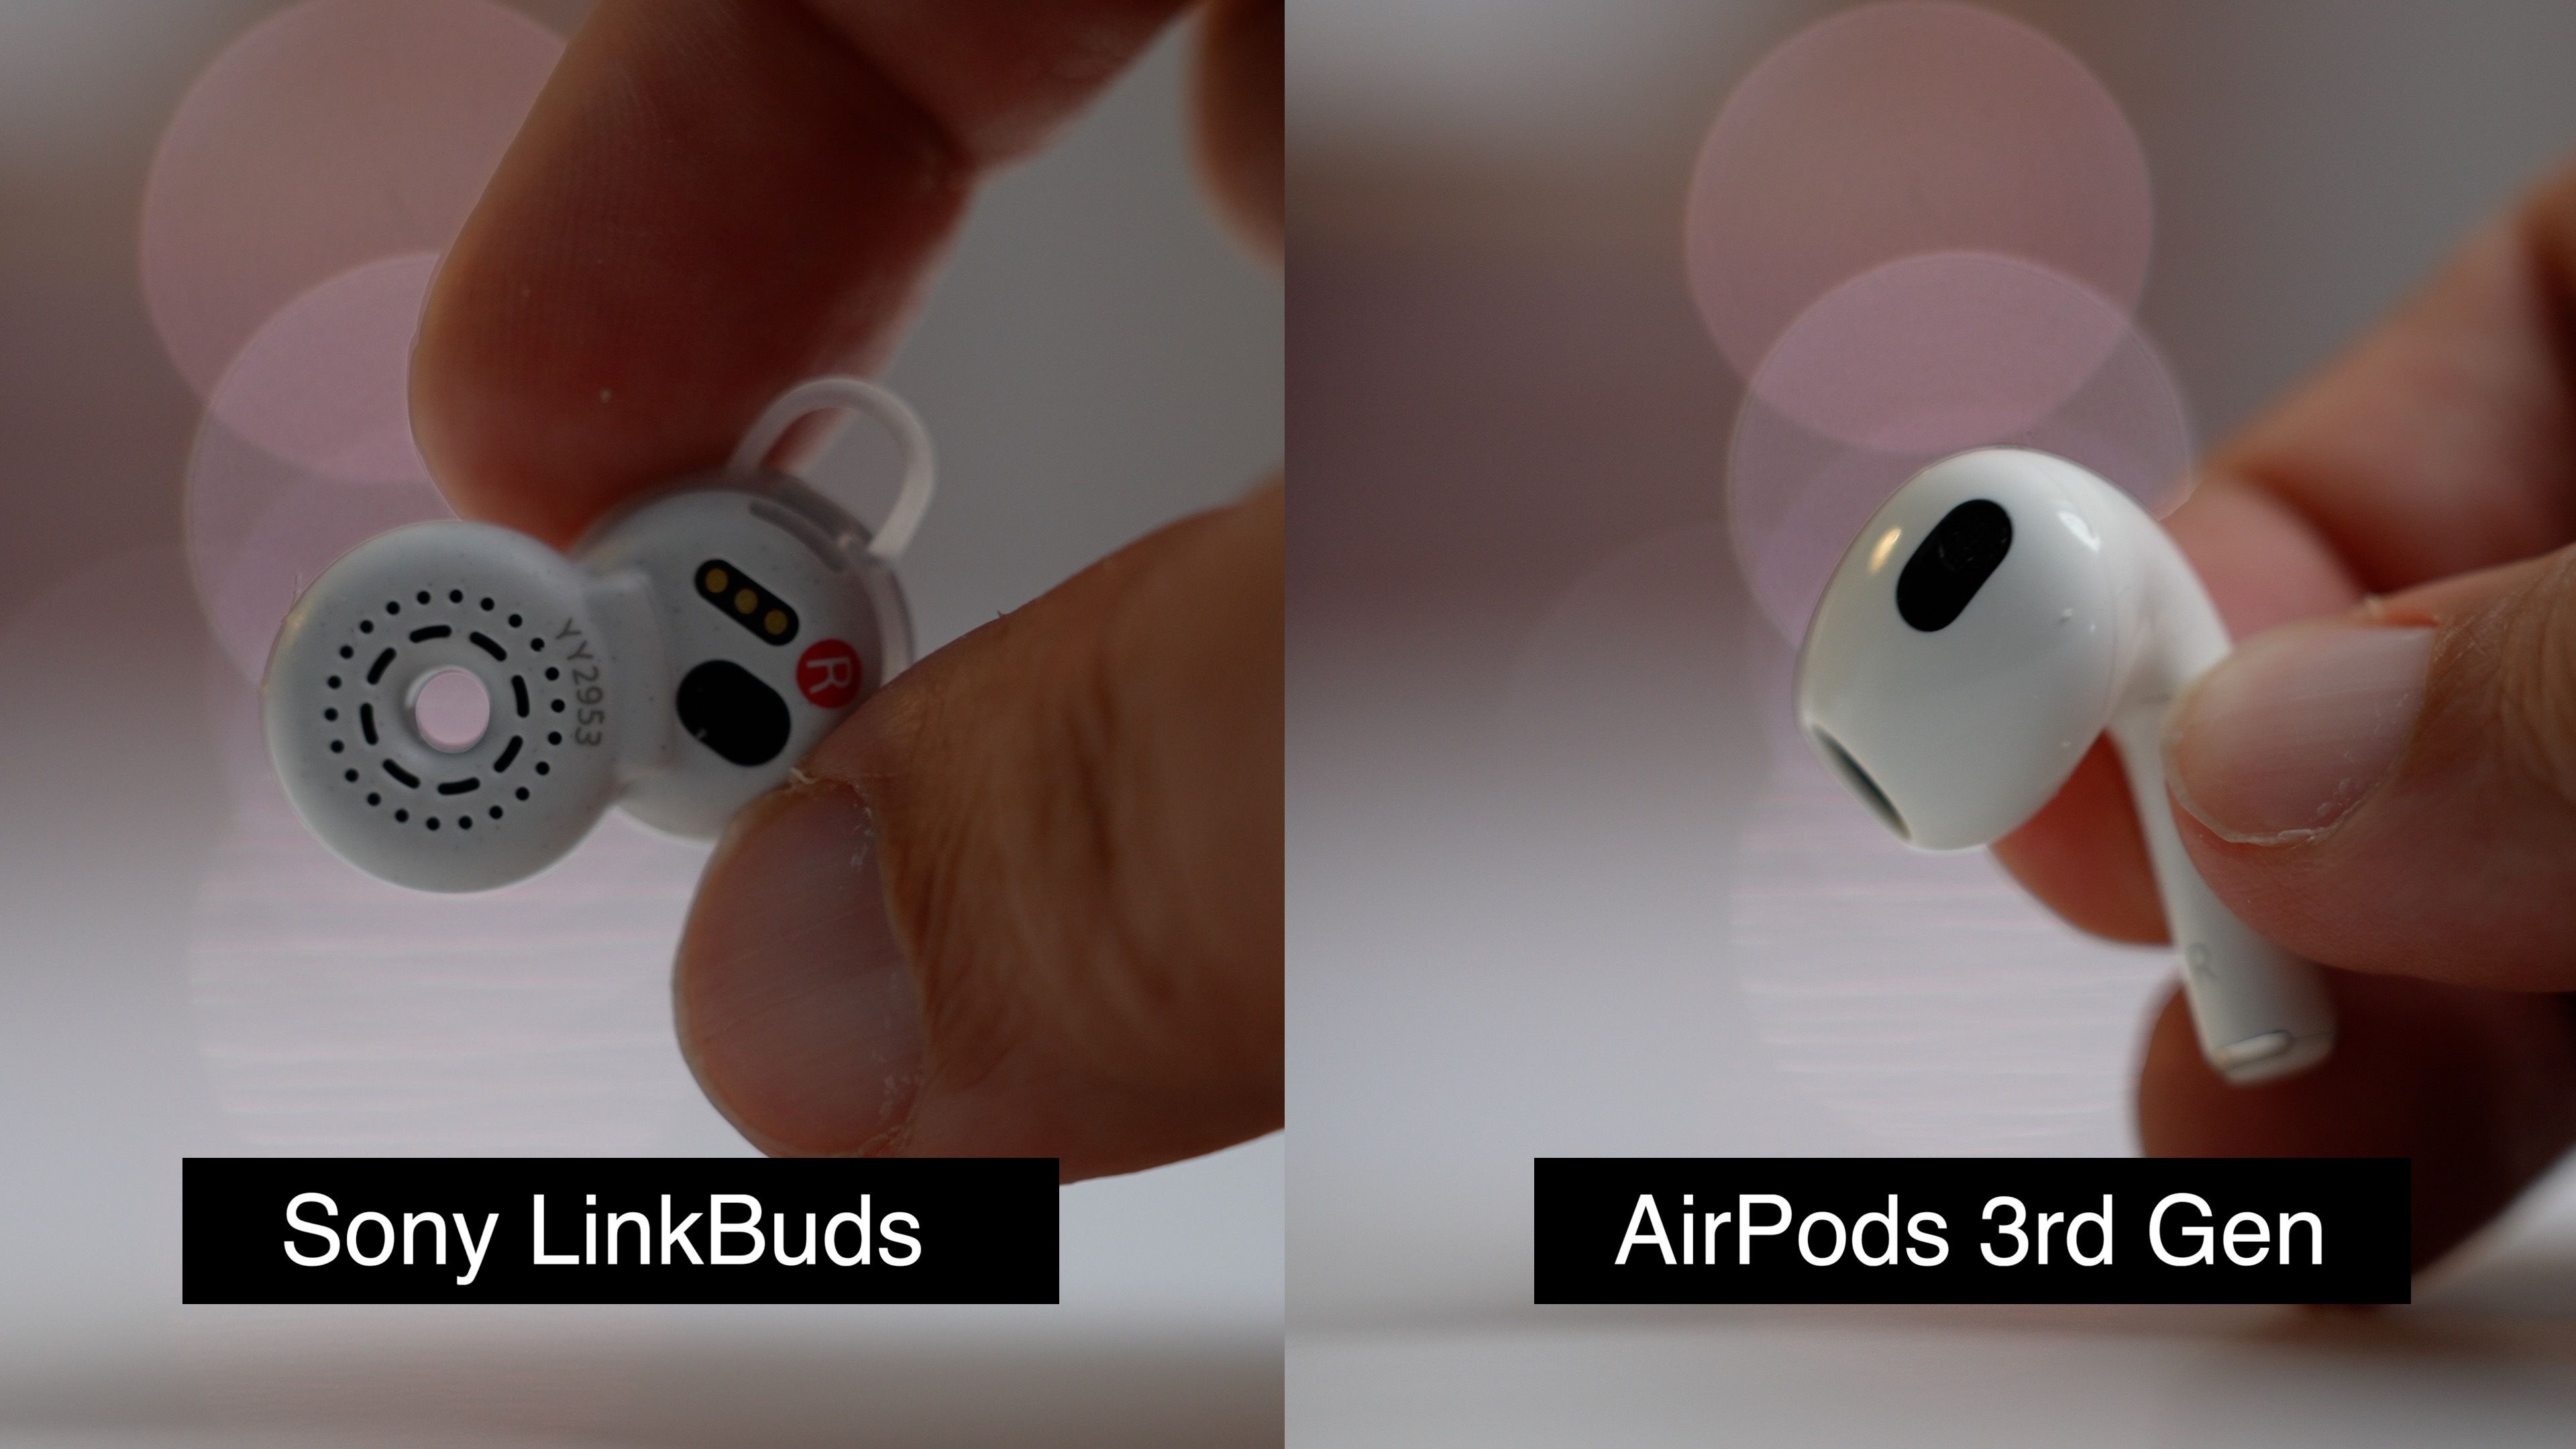 Новые LinkBuds от Sony сравниваются с Apple AirPods 3